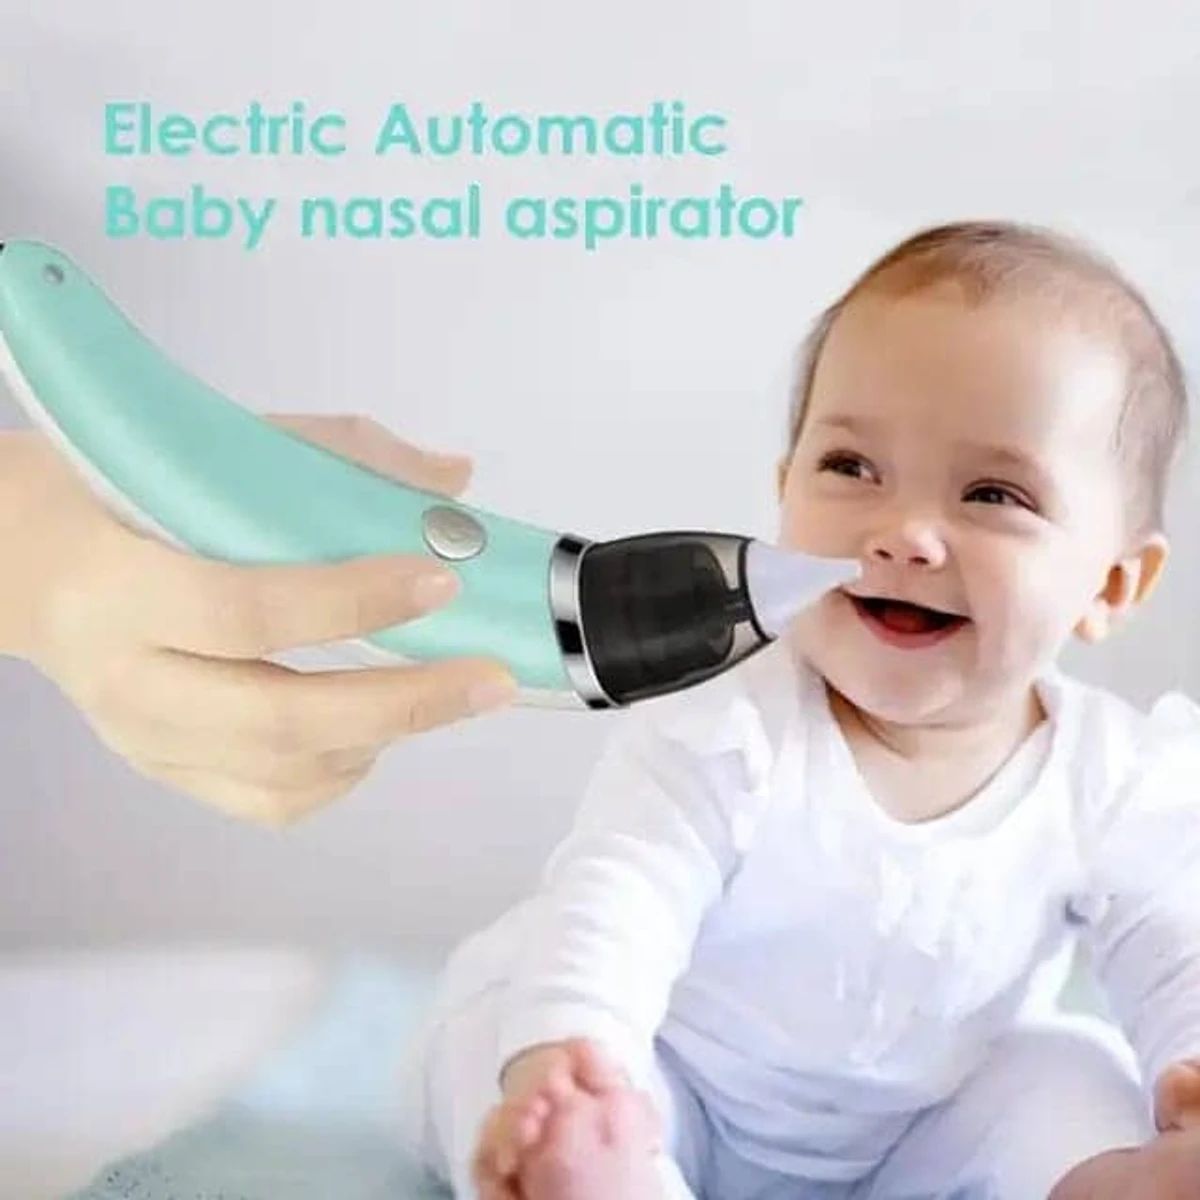 NASAL ASPIRATOR FOR BABY